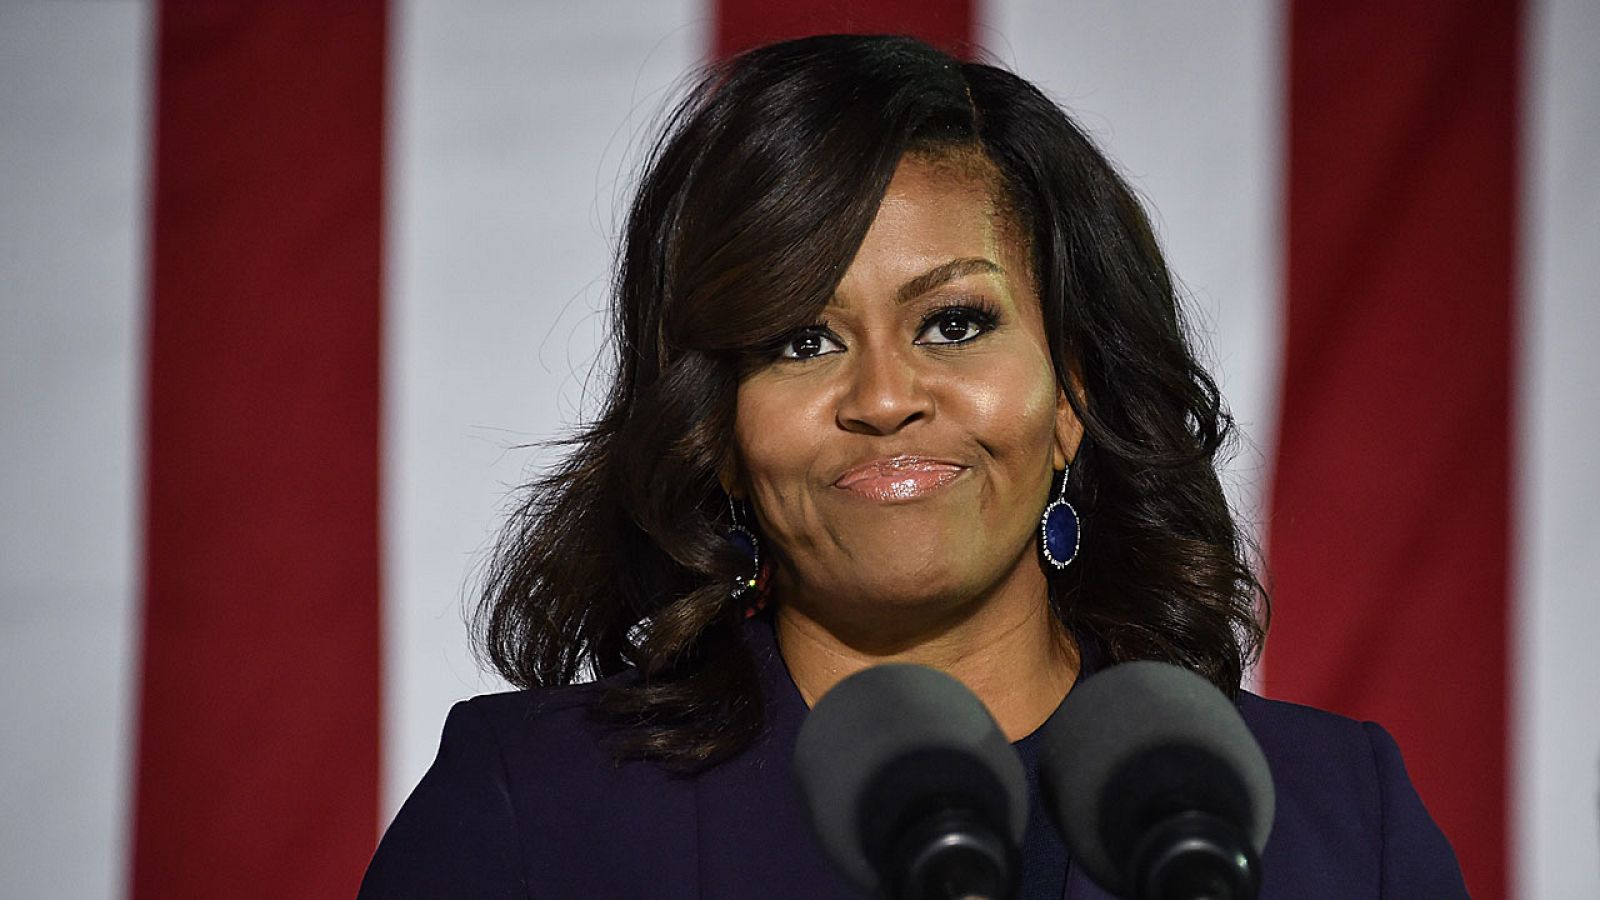 La primera dama Michelle Obama, víctima esta vez de una reacción machista.